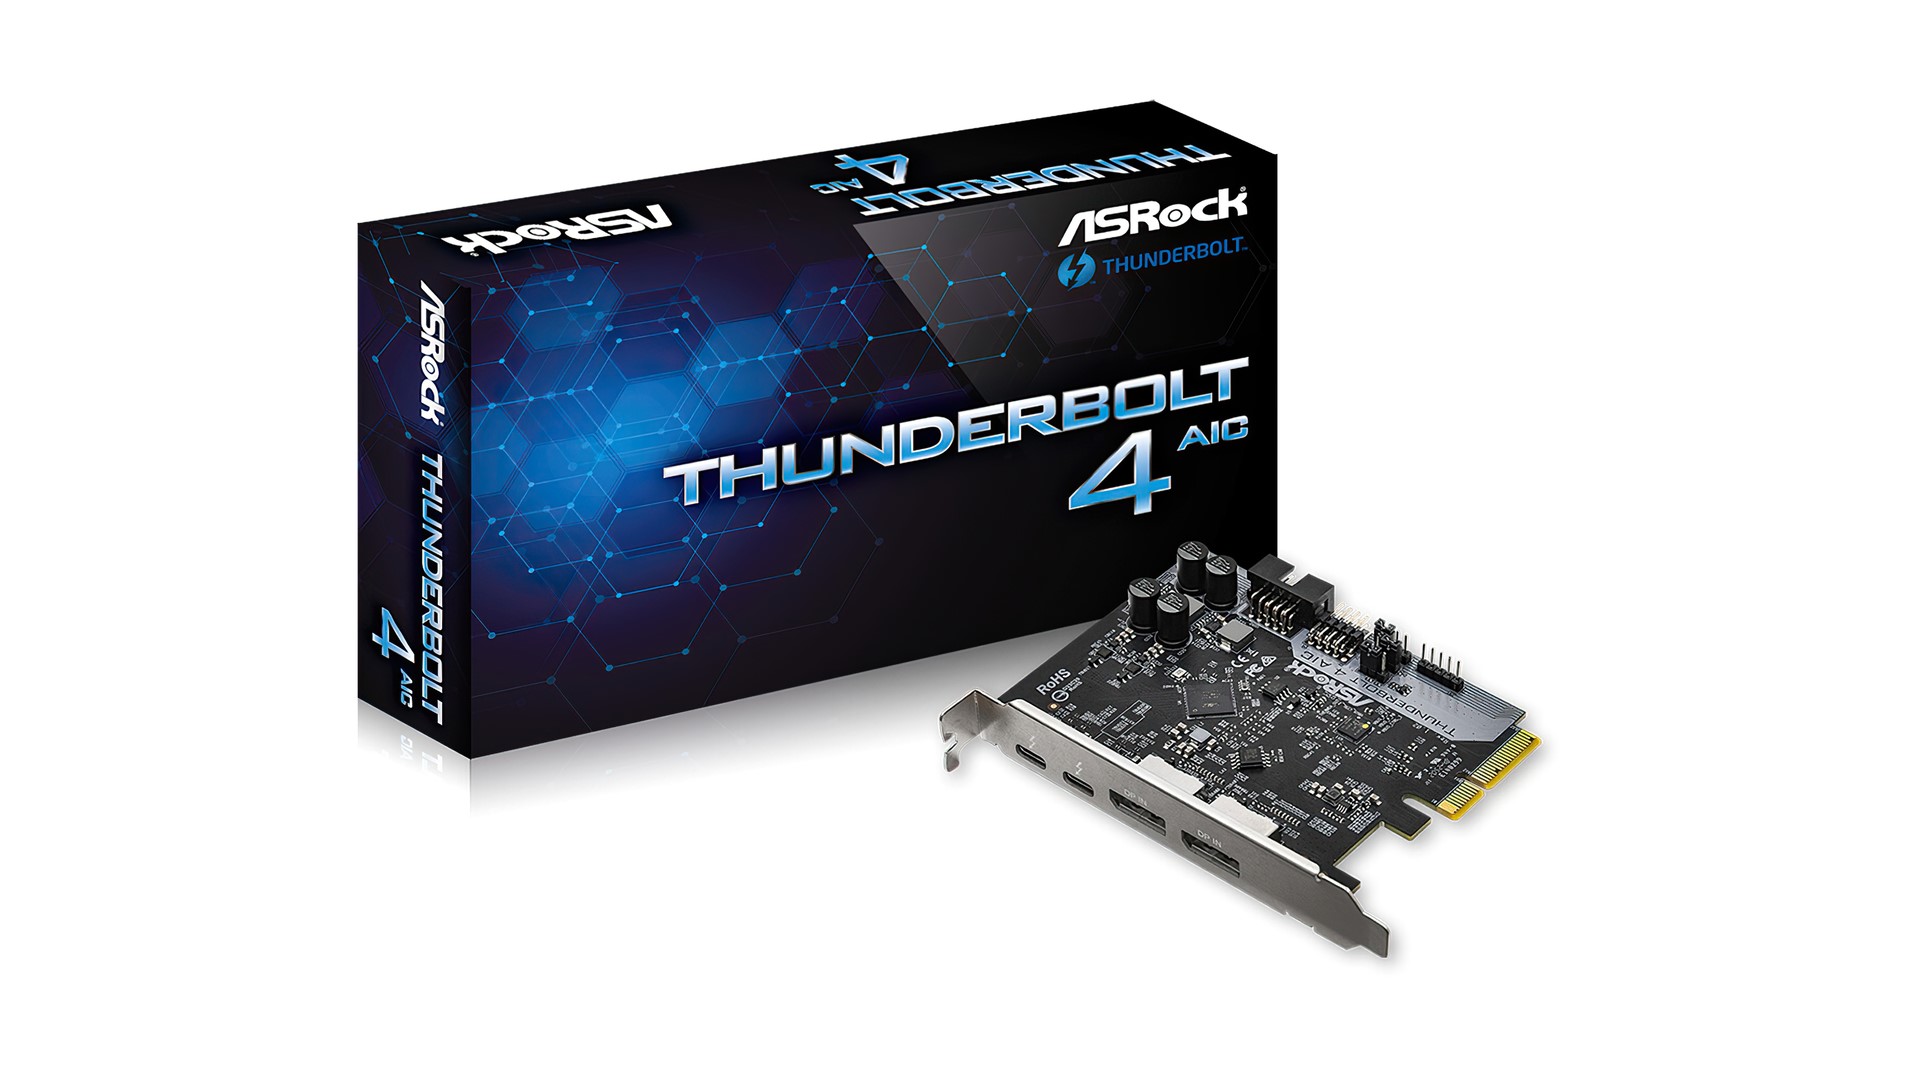 صورة شركة ASRock تكشف عن بطاقة توسعة Thunderbolt 4 AIC المميزة